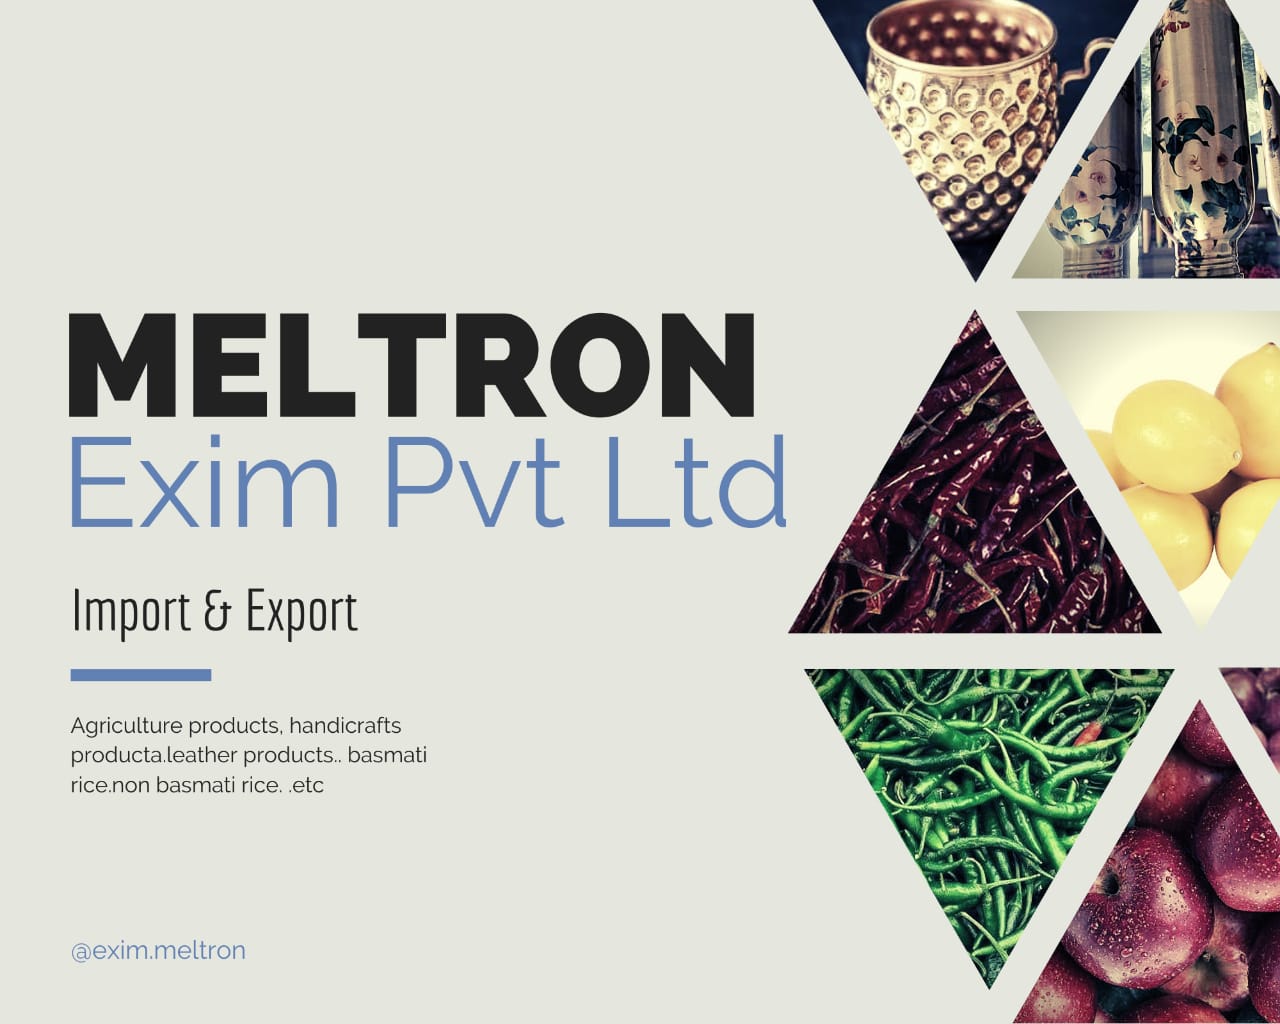 Meltron Exim Pvt Ltd